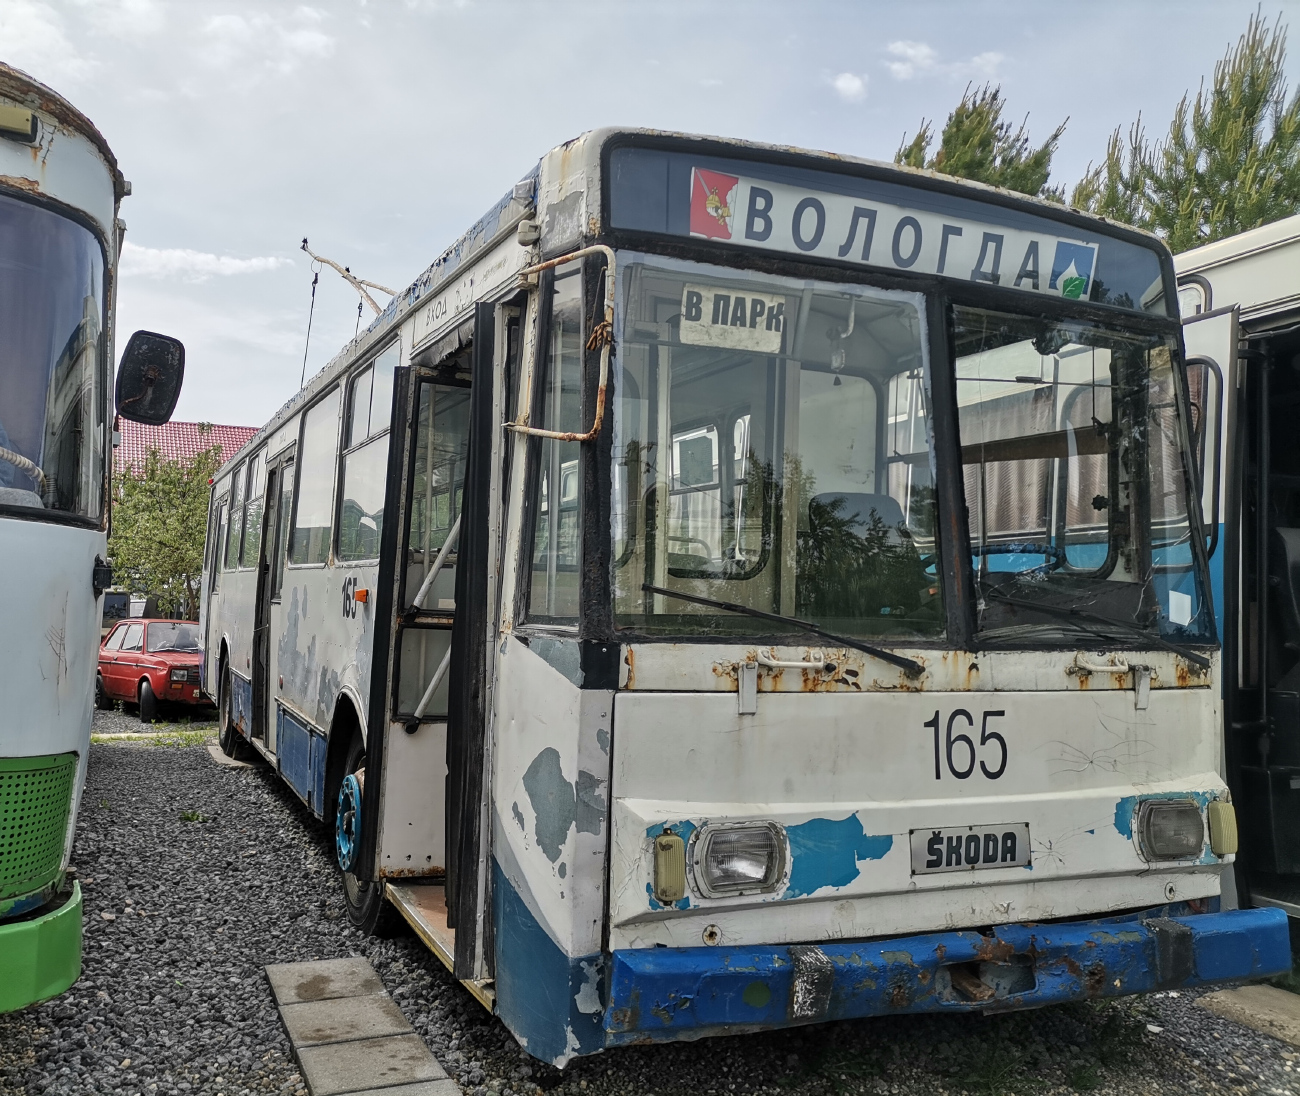 Вологда, Škoda 14TrM (ВМЗ) № 165